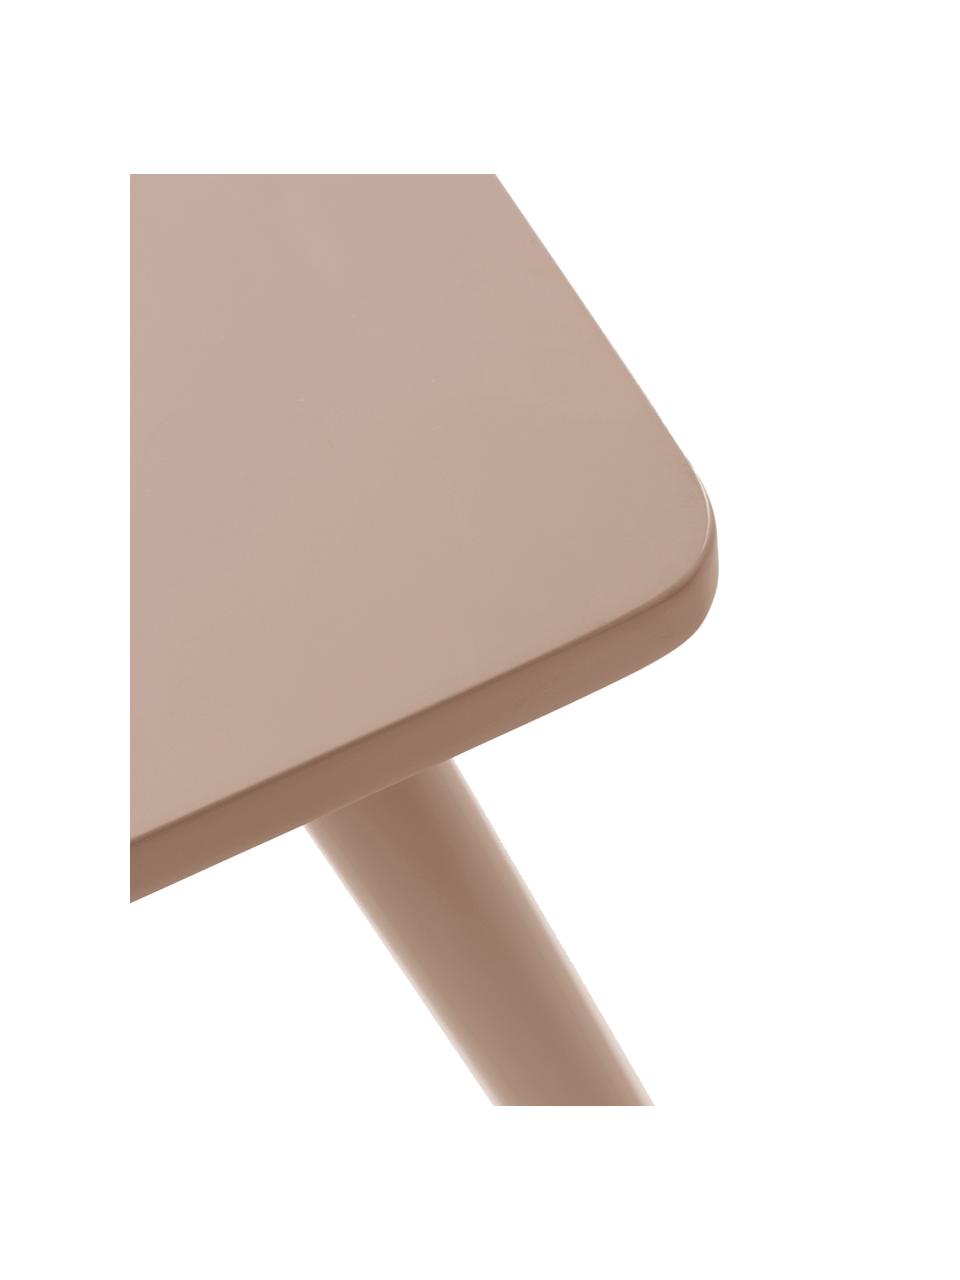 Stół z drewna dla dzieci Kinna Mini, Drewno sosnowe, płyta pilśniowa średniej gęstości (MDF) lakierowana, Drewno naturalne lakierowane na blady różowy, S 50 x W 50 cm